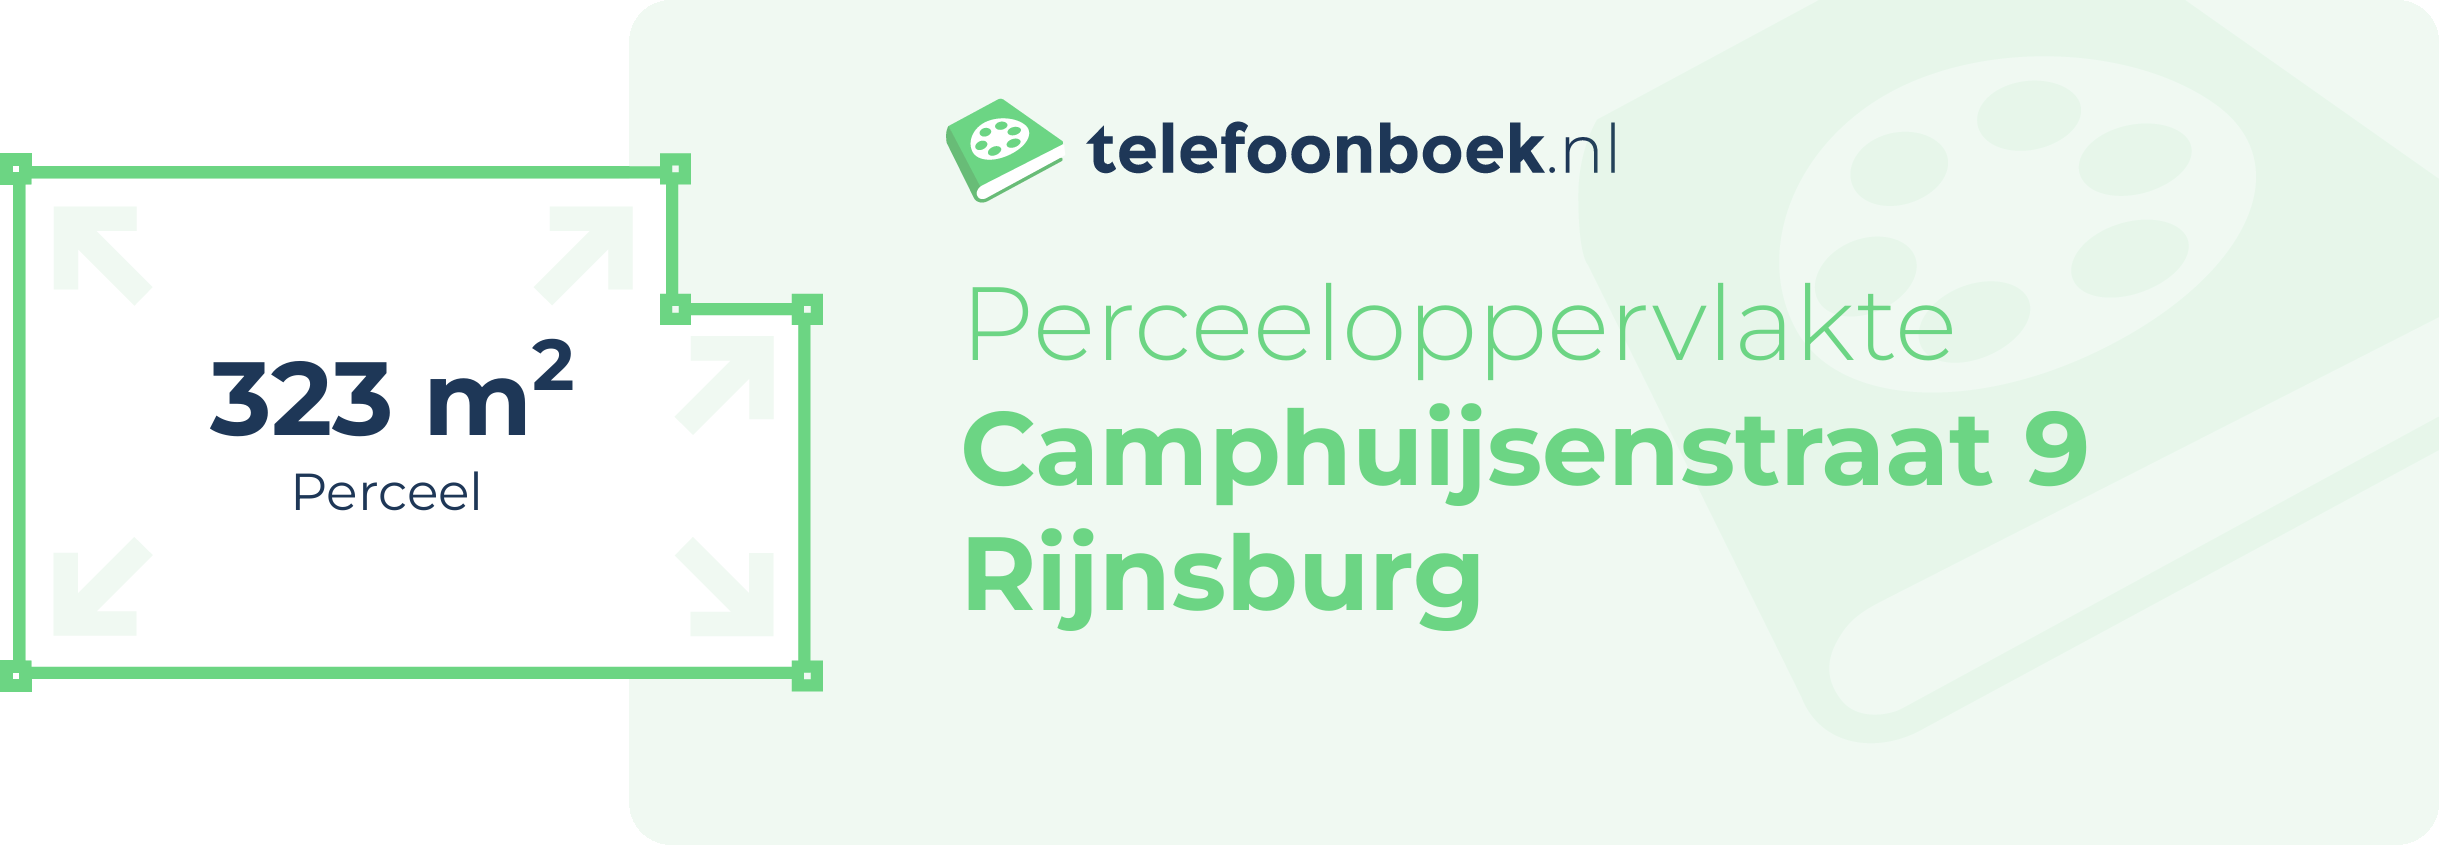 Perceeloppervlakte Camphuijsenstraat 9 Rijnsburg